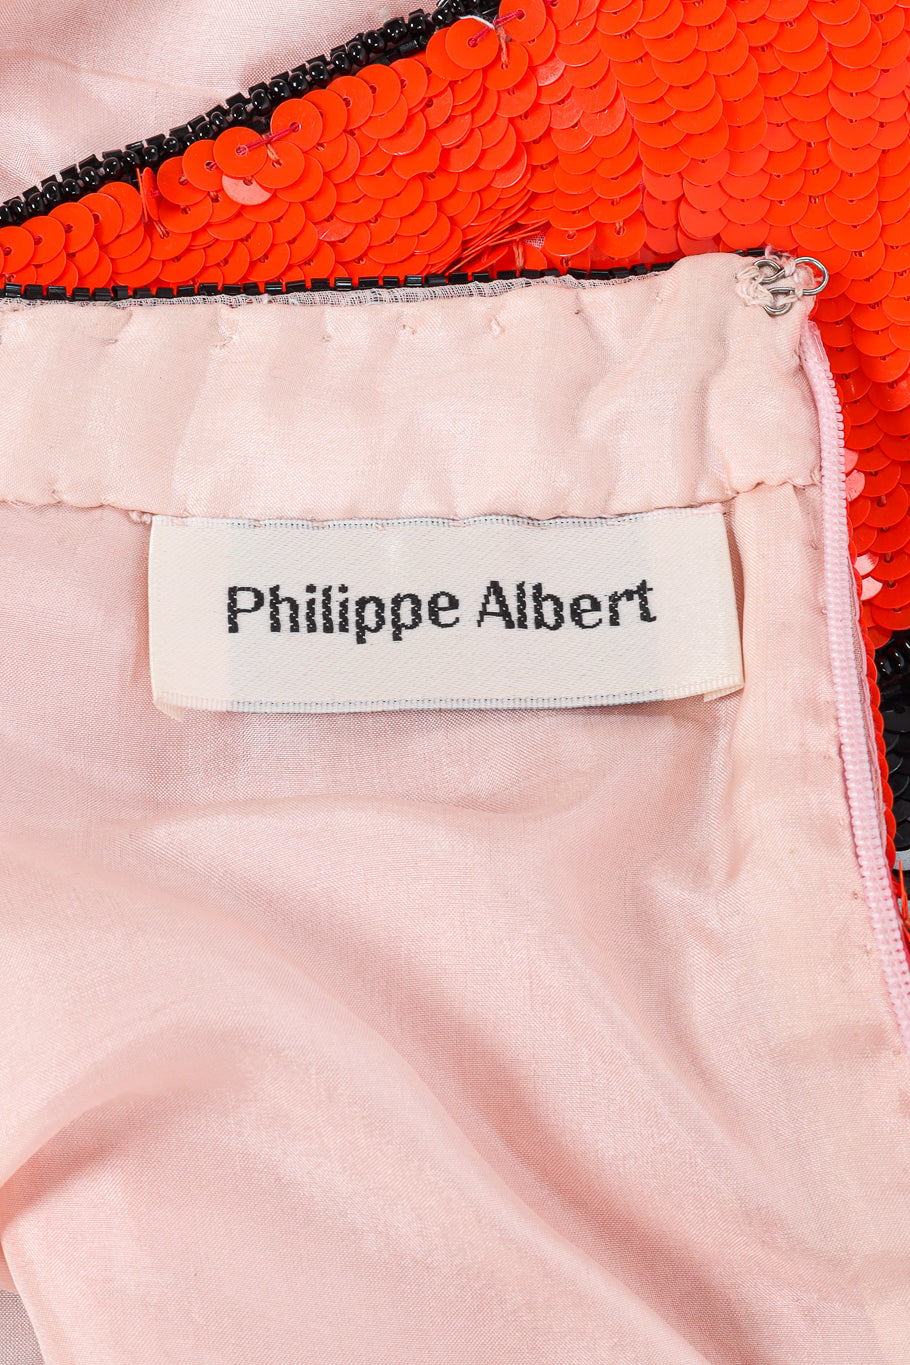 Sequined halter dress by Philippe Albert label @recessla